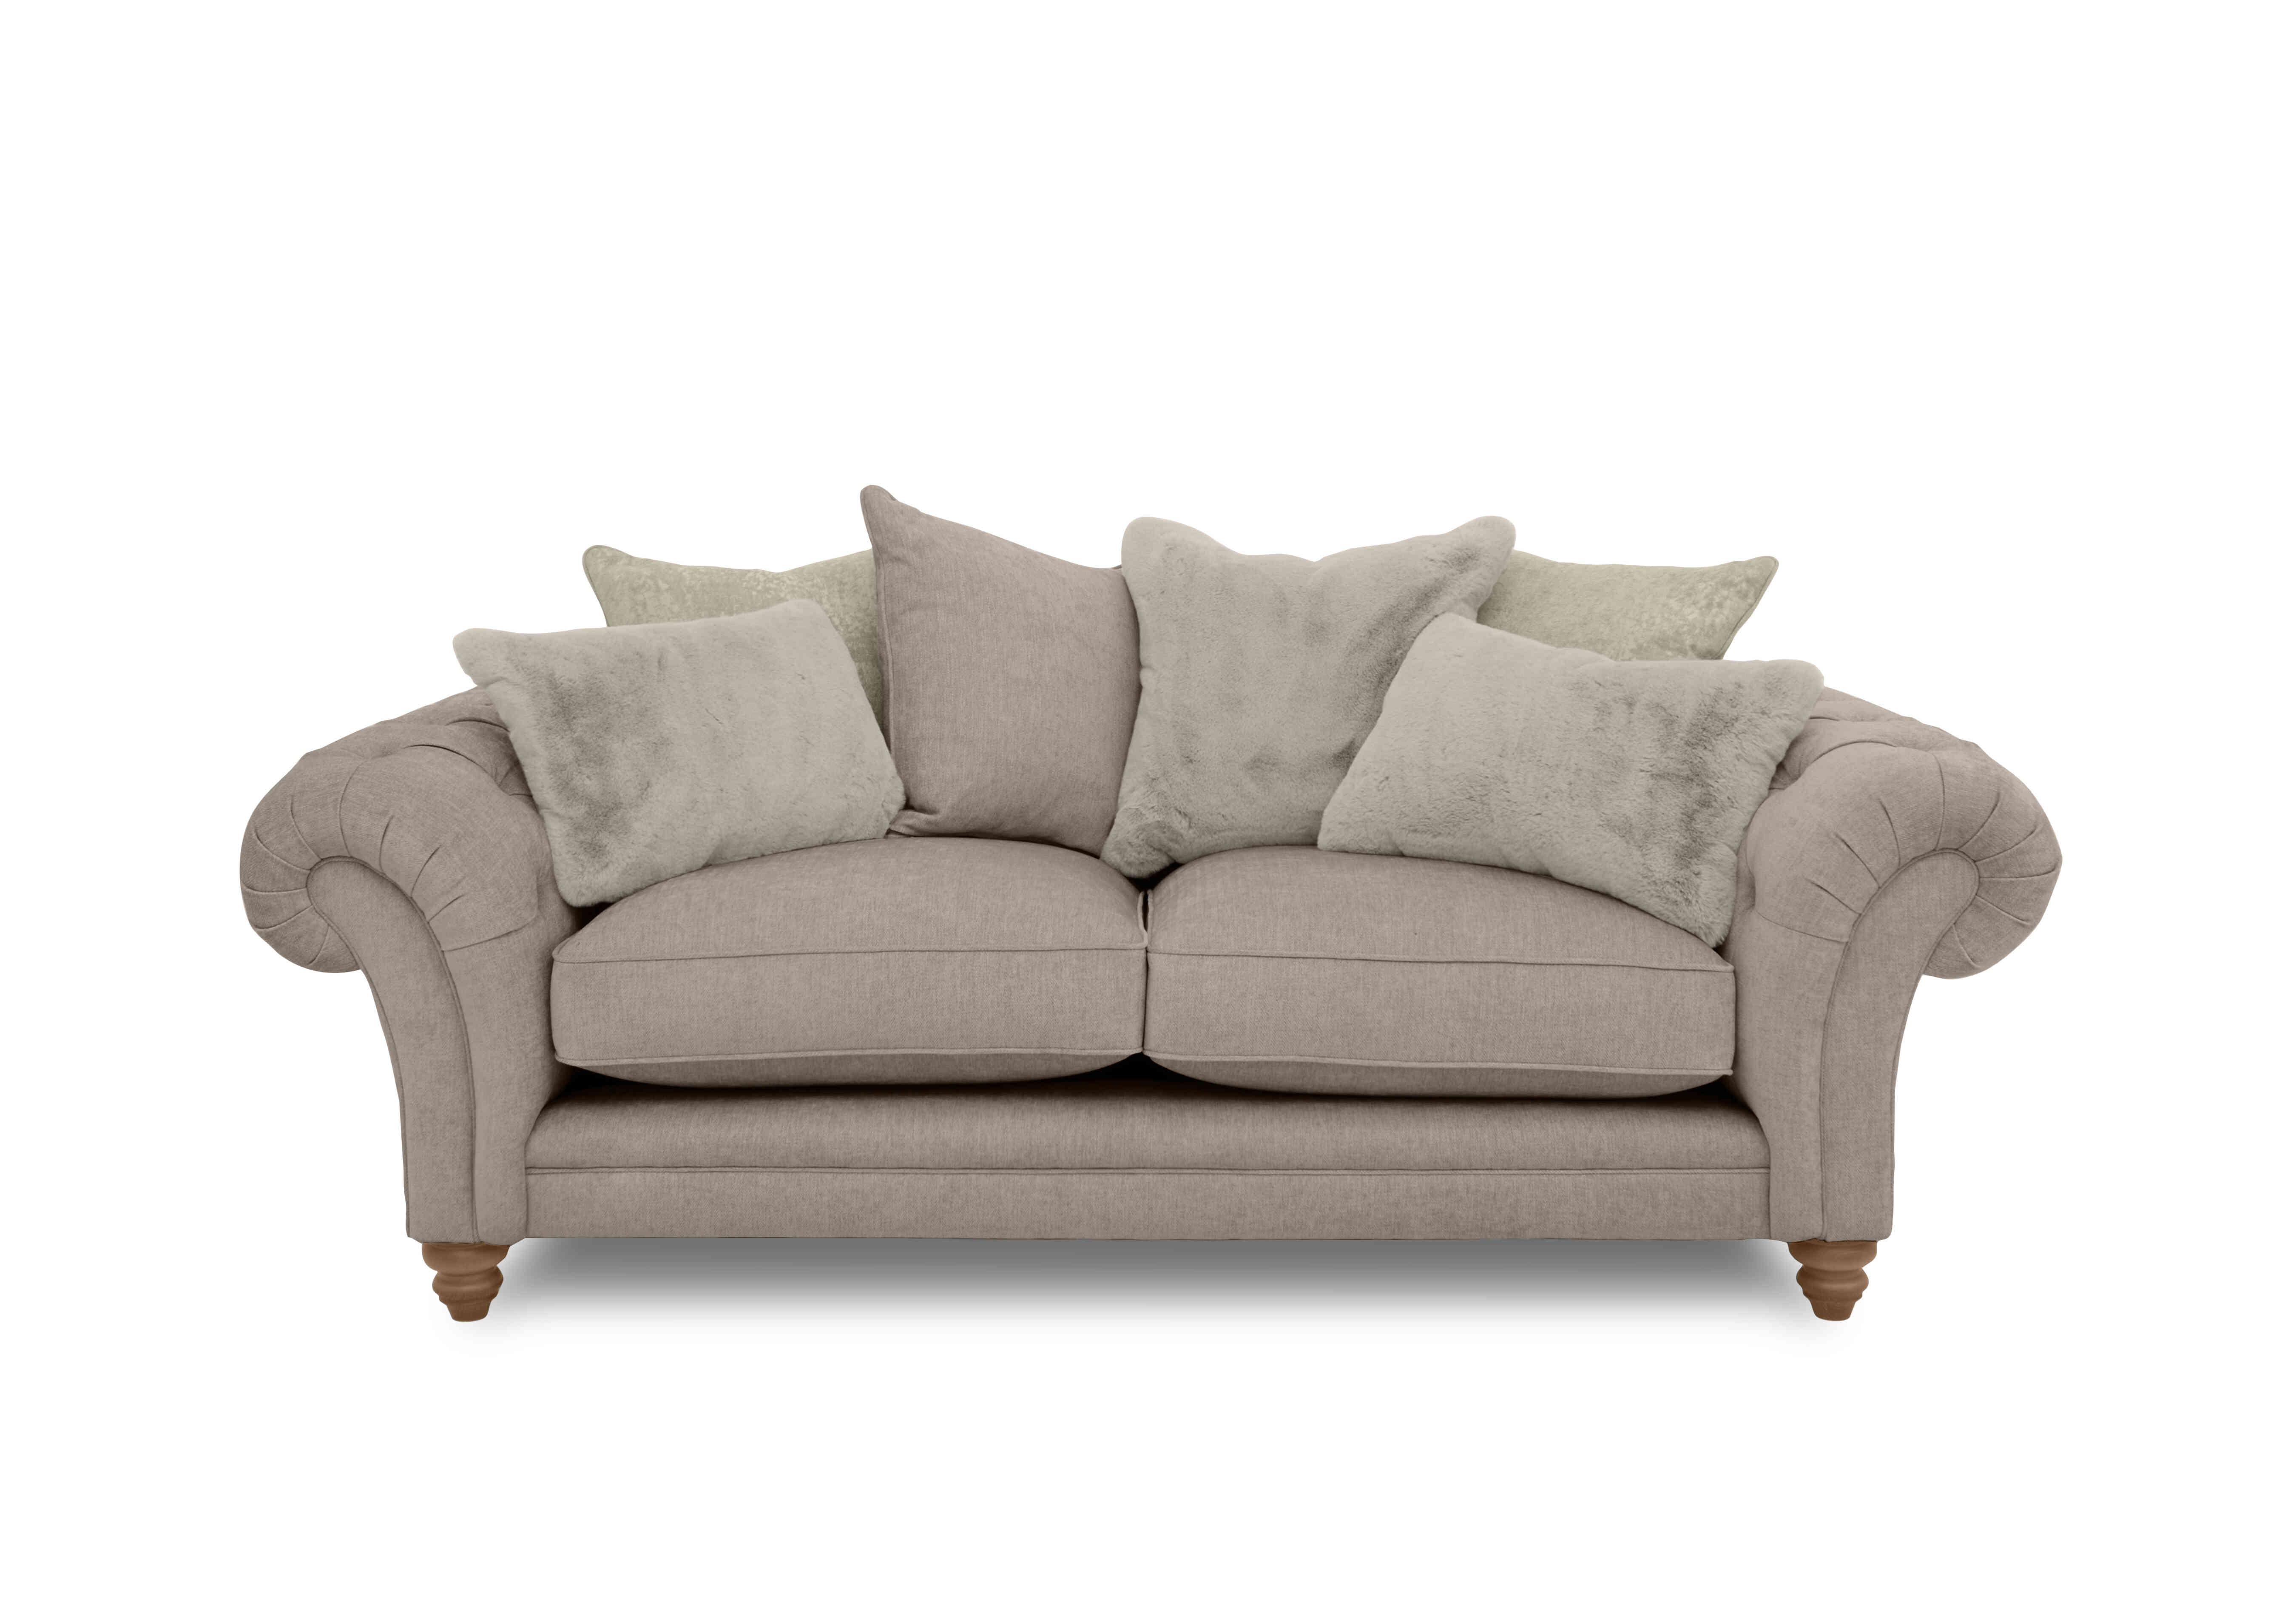 Blenheim 3 Seater Scatter Back Sofa in Darwin Mink Of on Furniture Village